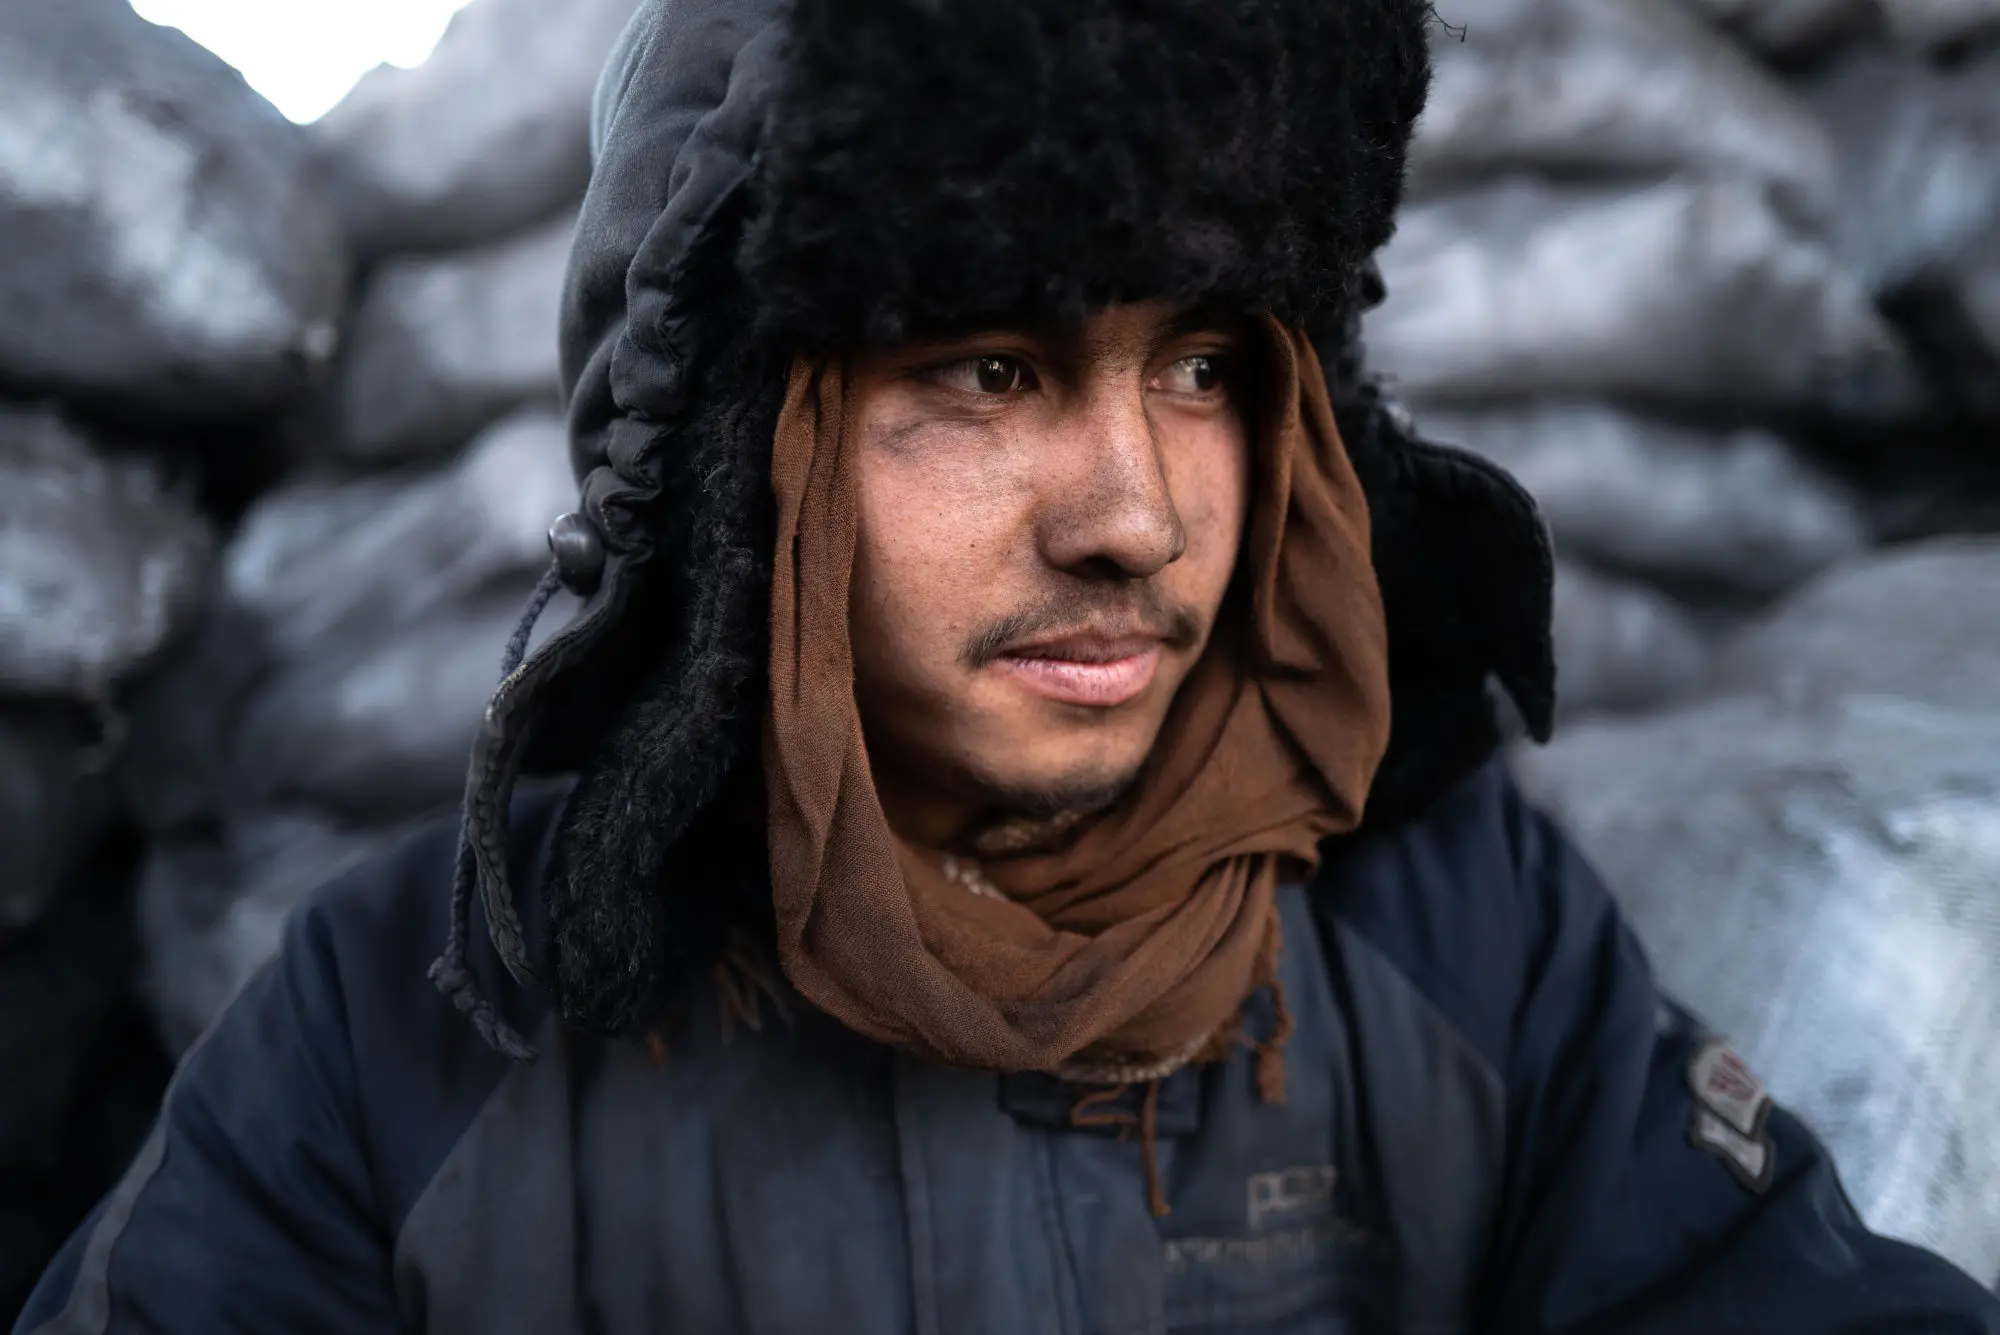 A man in winter gear